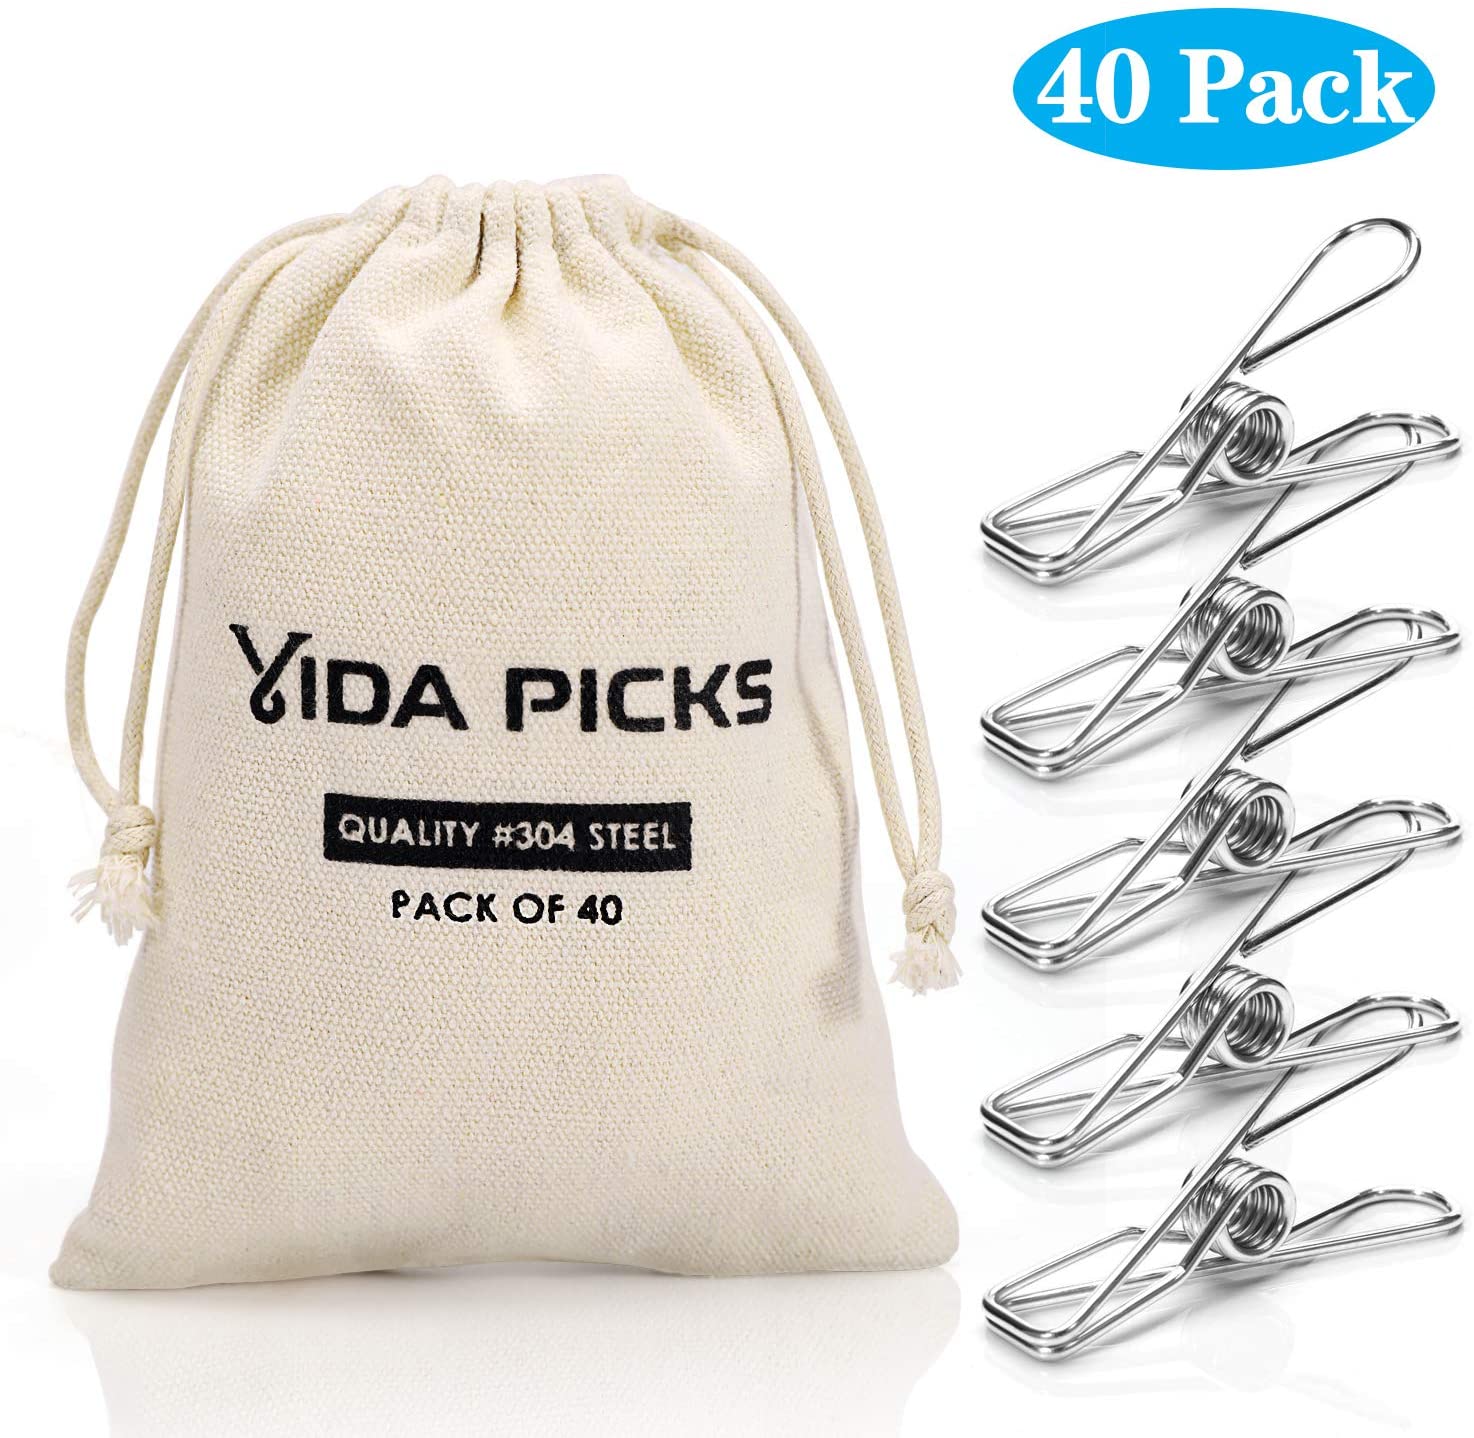 Vida Picks Wire Clothespins, 40-Count